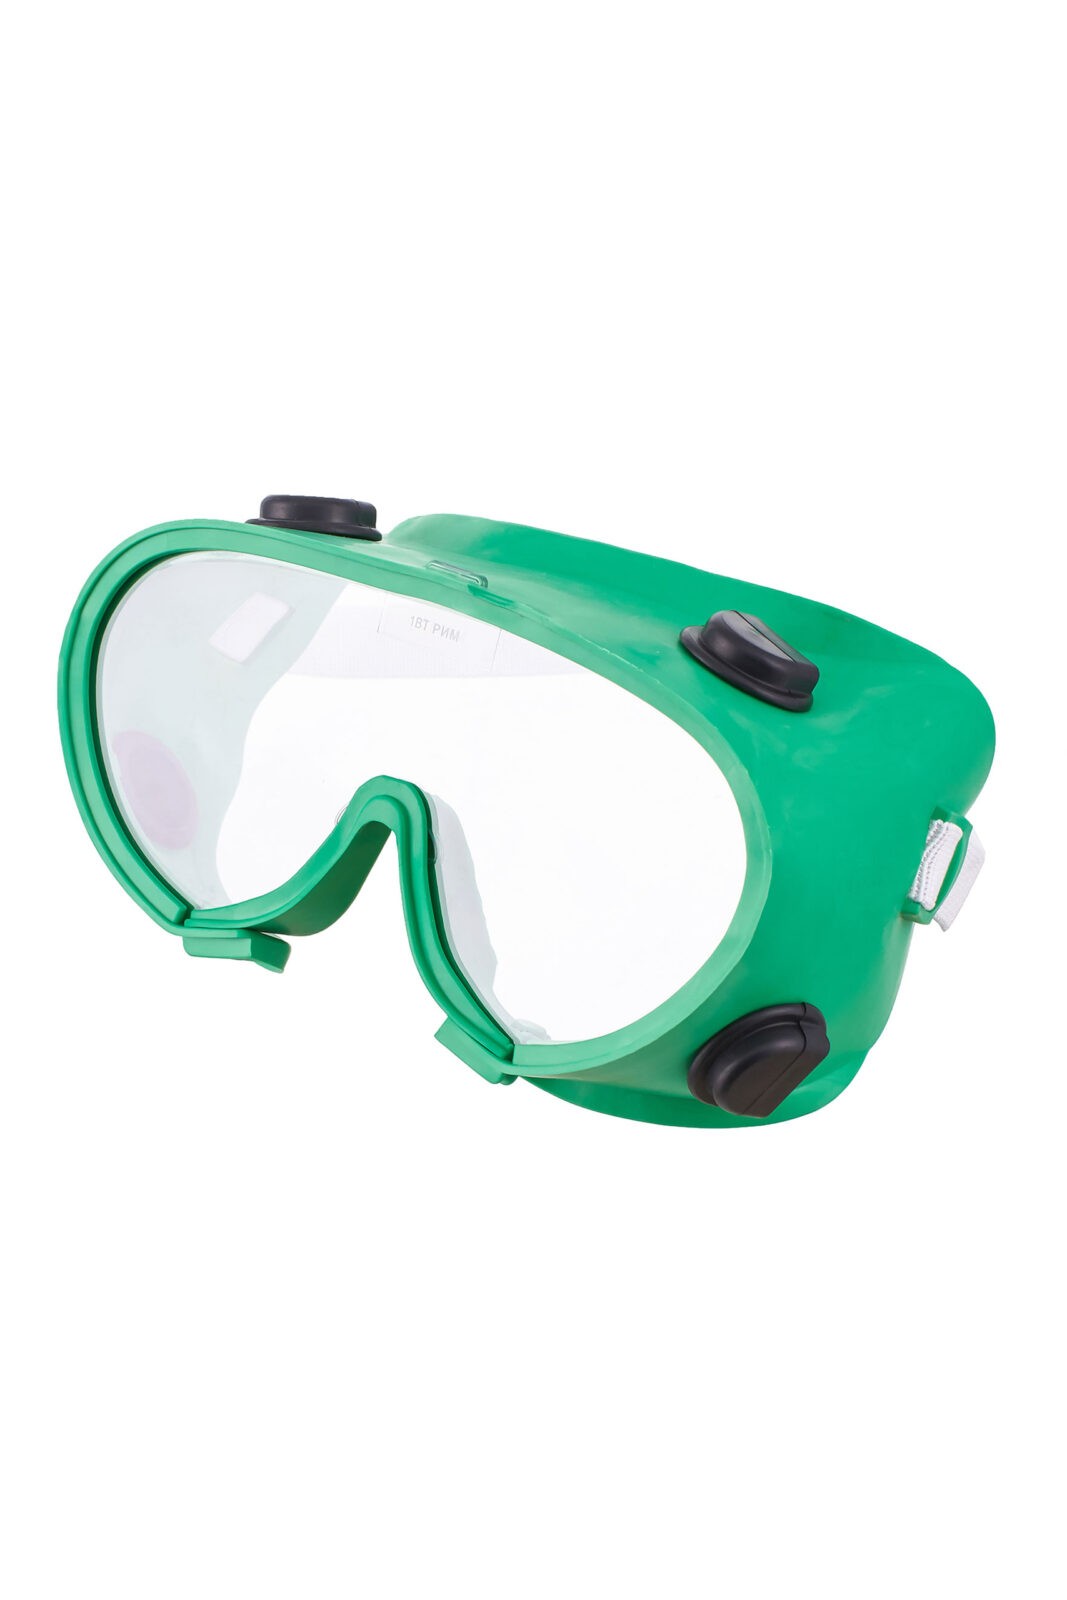 Защитные очки с непрямой вентиляцией “Стандарт”